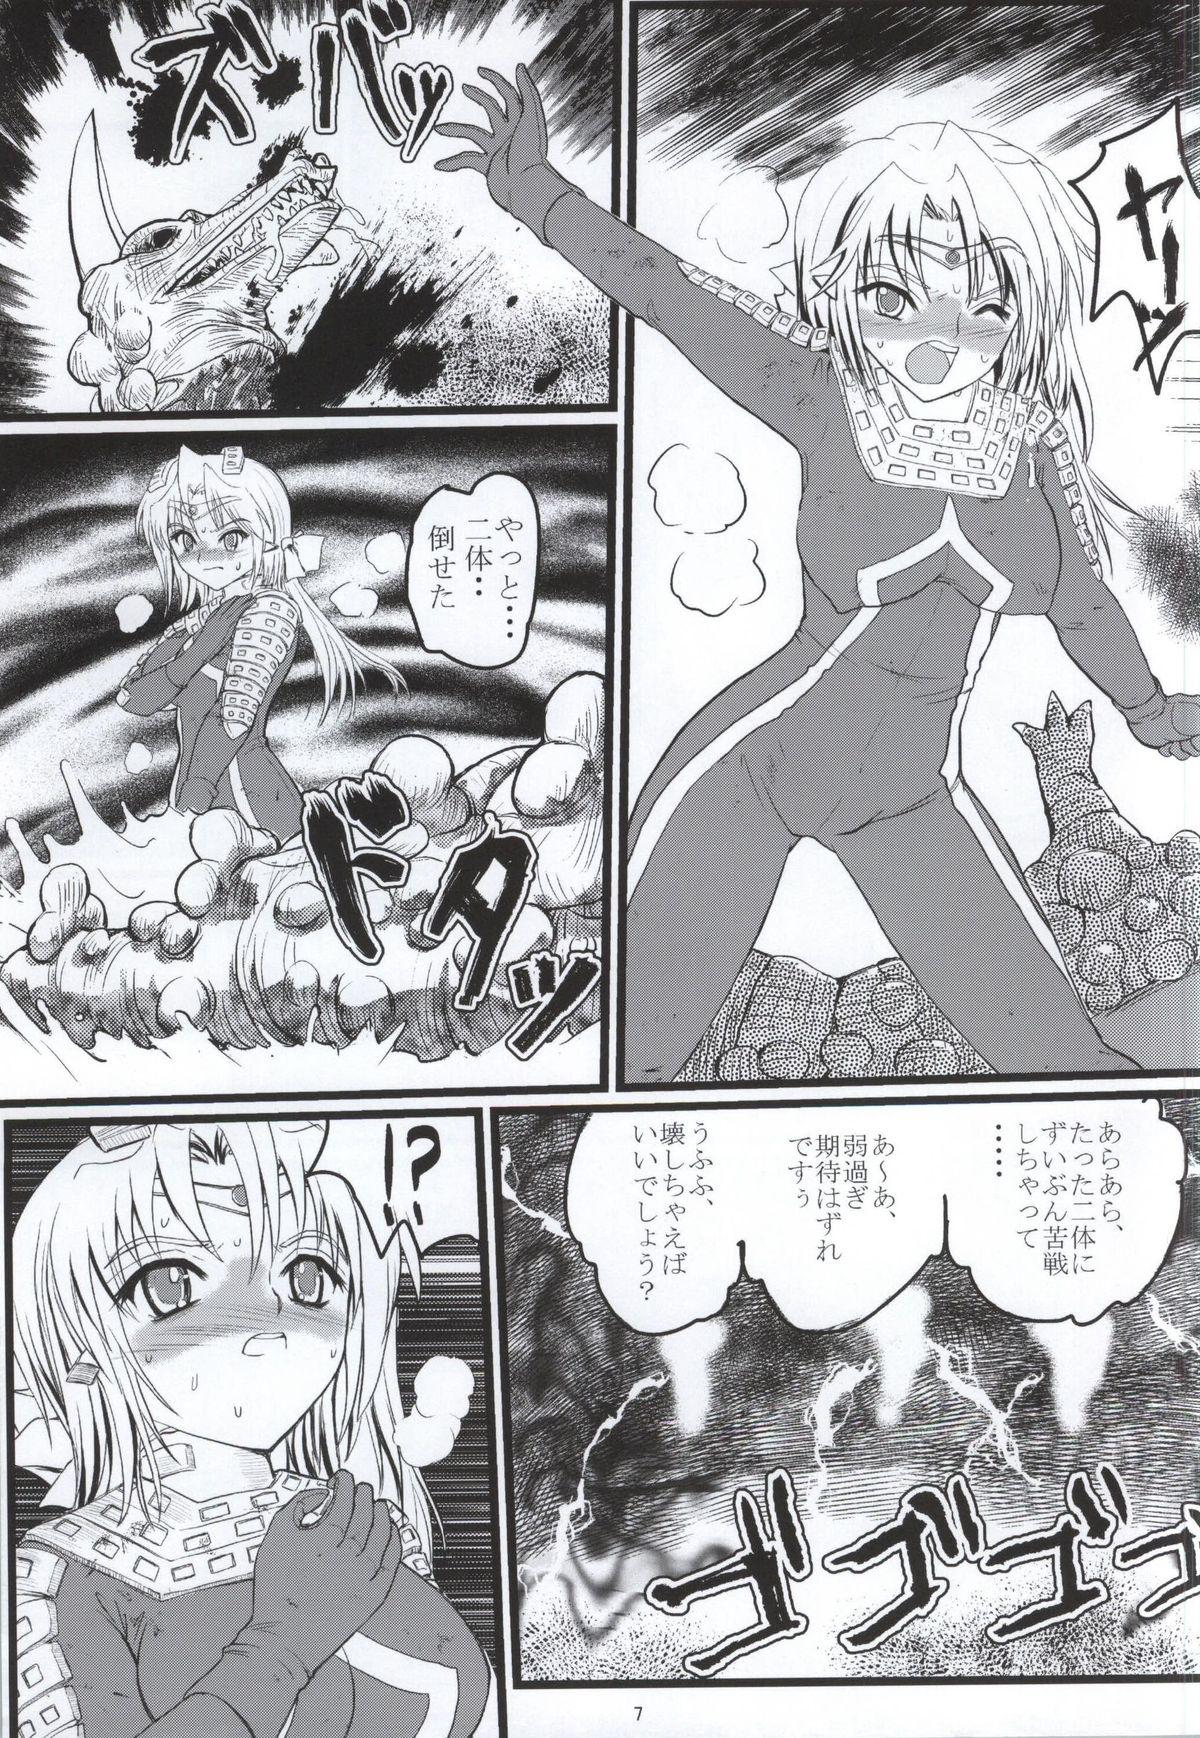 Eating Ultra Nanako Zettaizetsumei! Vol. 3 - Ultraman Pounding - Page 6